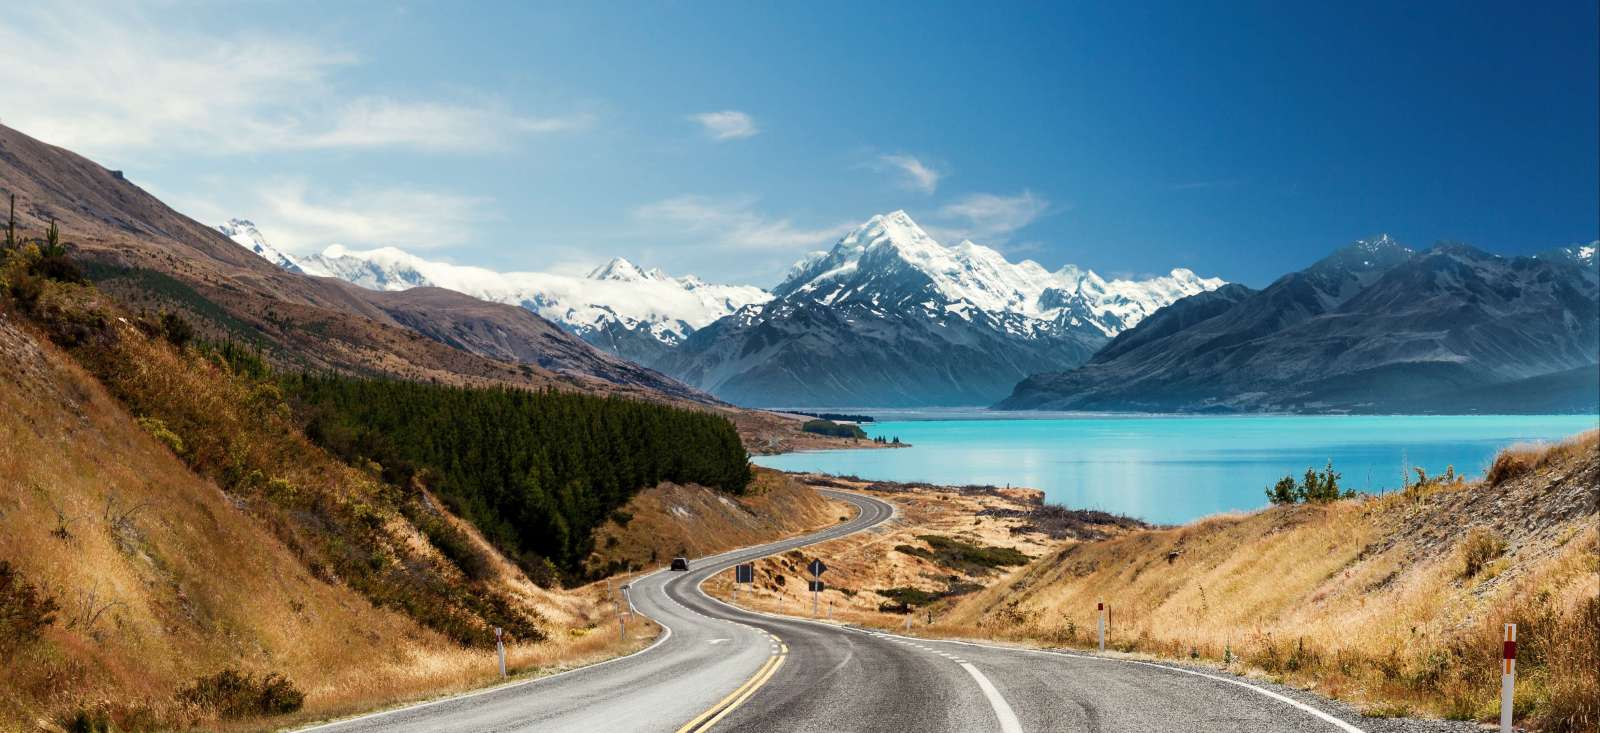 Image Cap sur l'île du Sud en Nouvelle Zélande